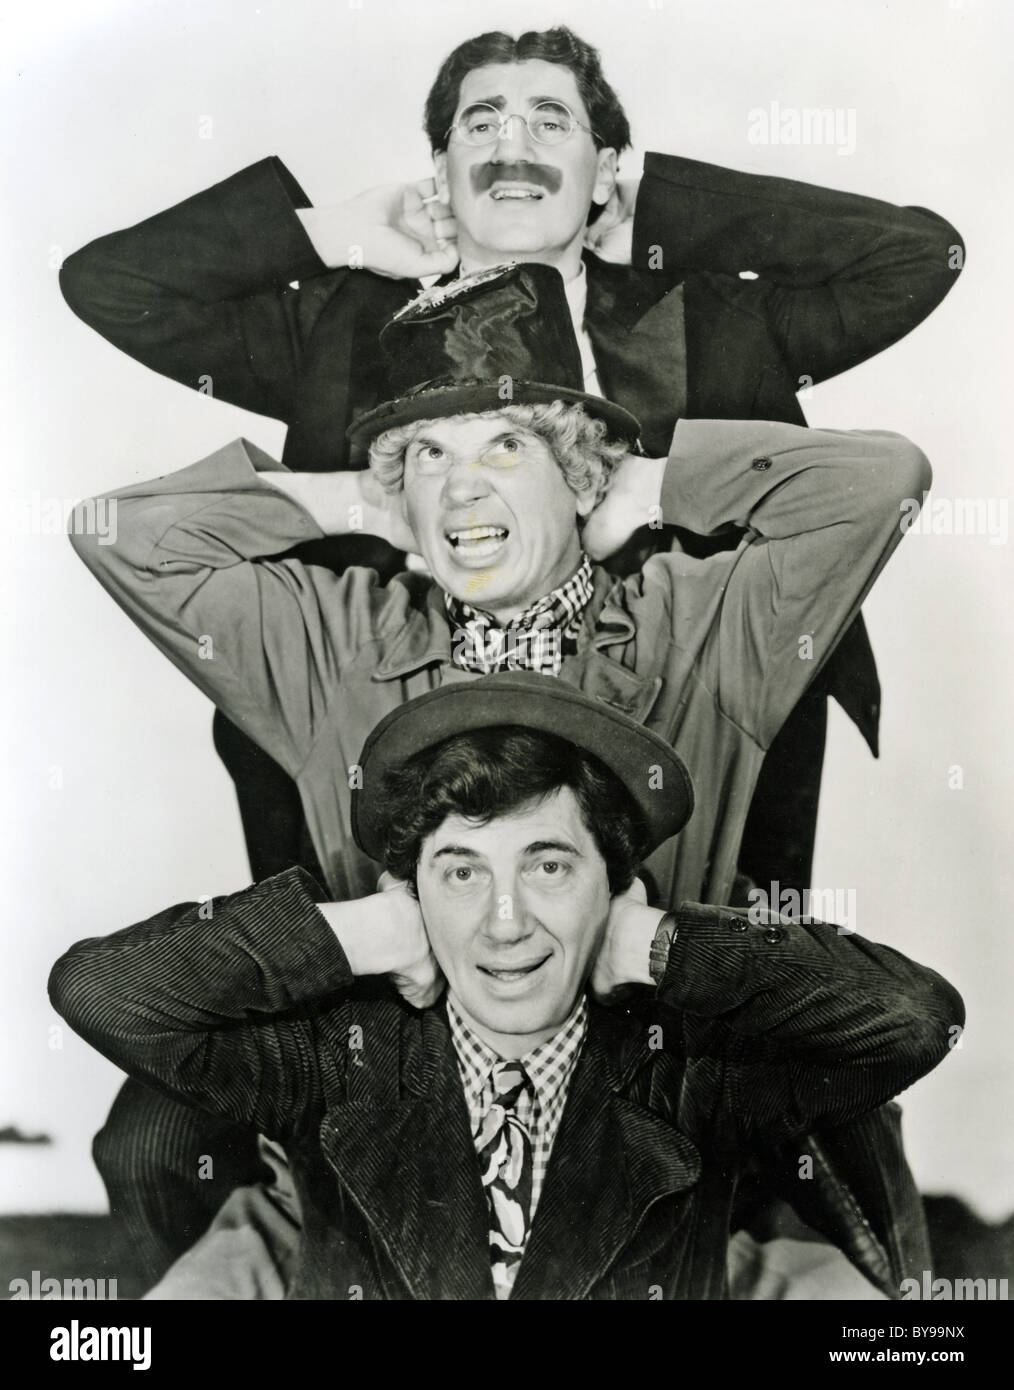 MARX BROTHERS pellicola US comedy team con dalla parte superiore, Groucho, gli Harpo e Chico Foto Stock